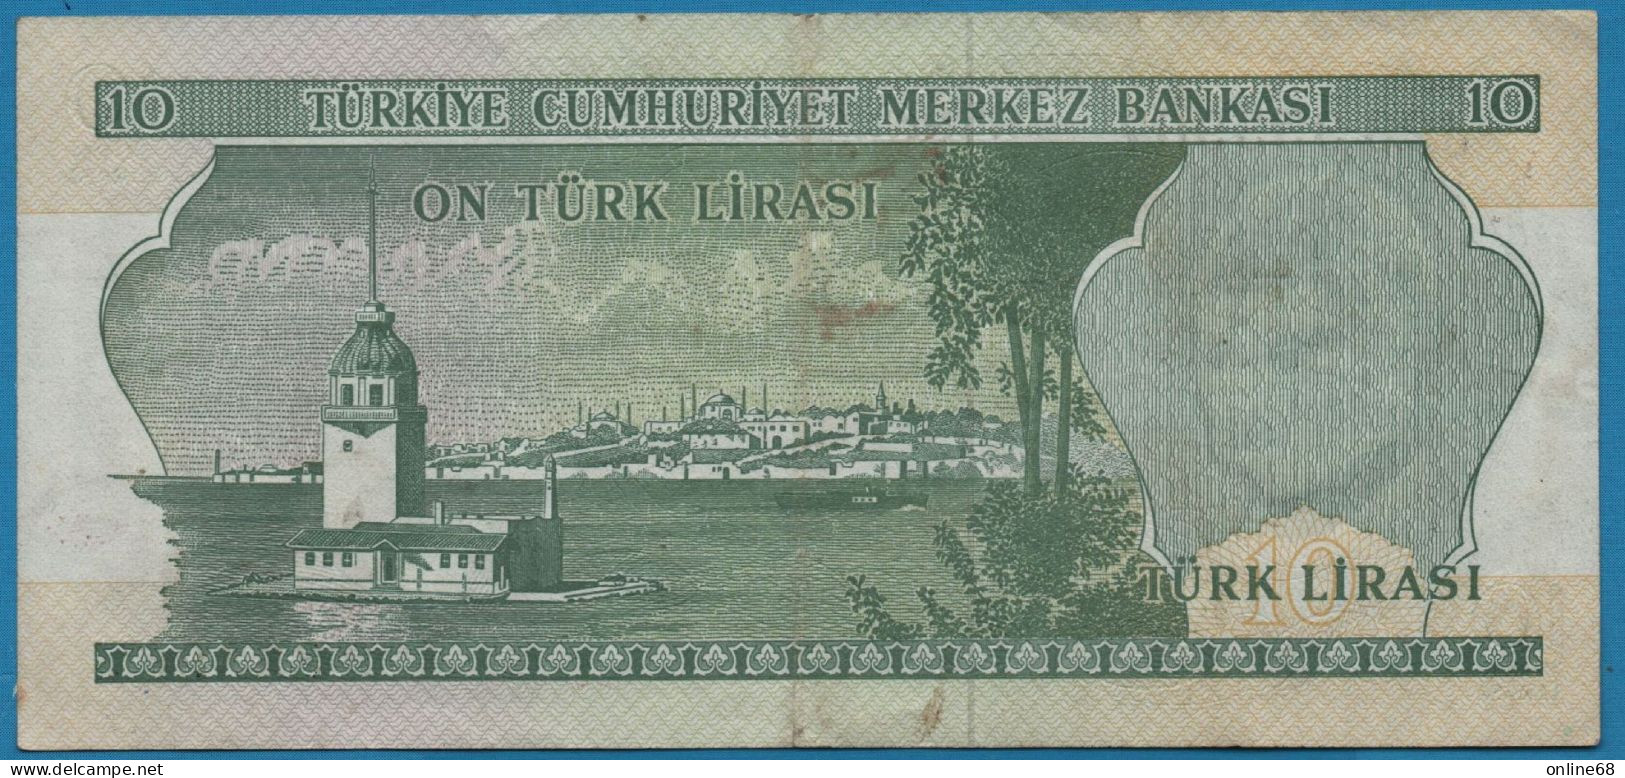 TURKEY 10 LIRASI L. 1970 # J23 353967 P# 186 Atatürk - Turchia